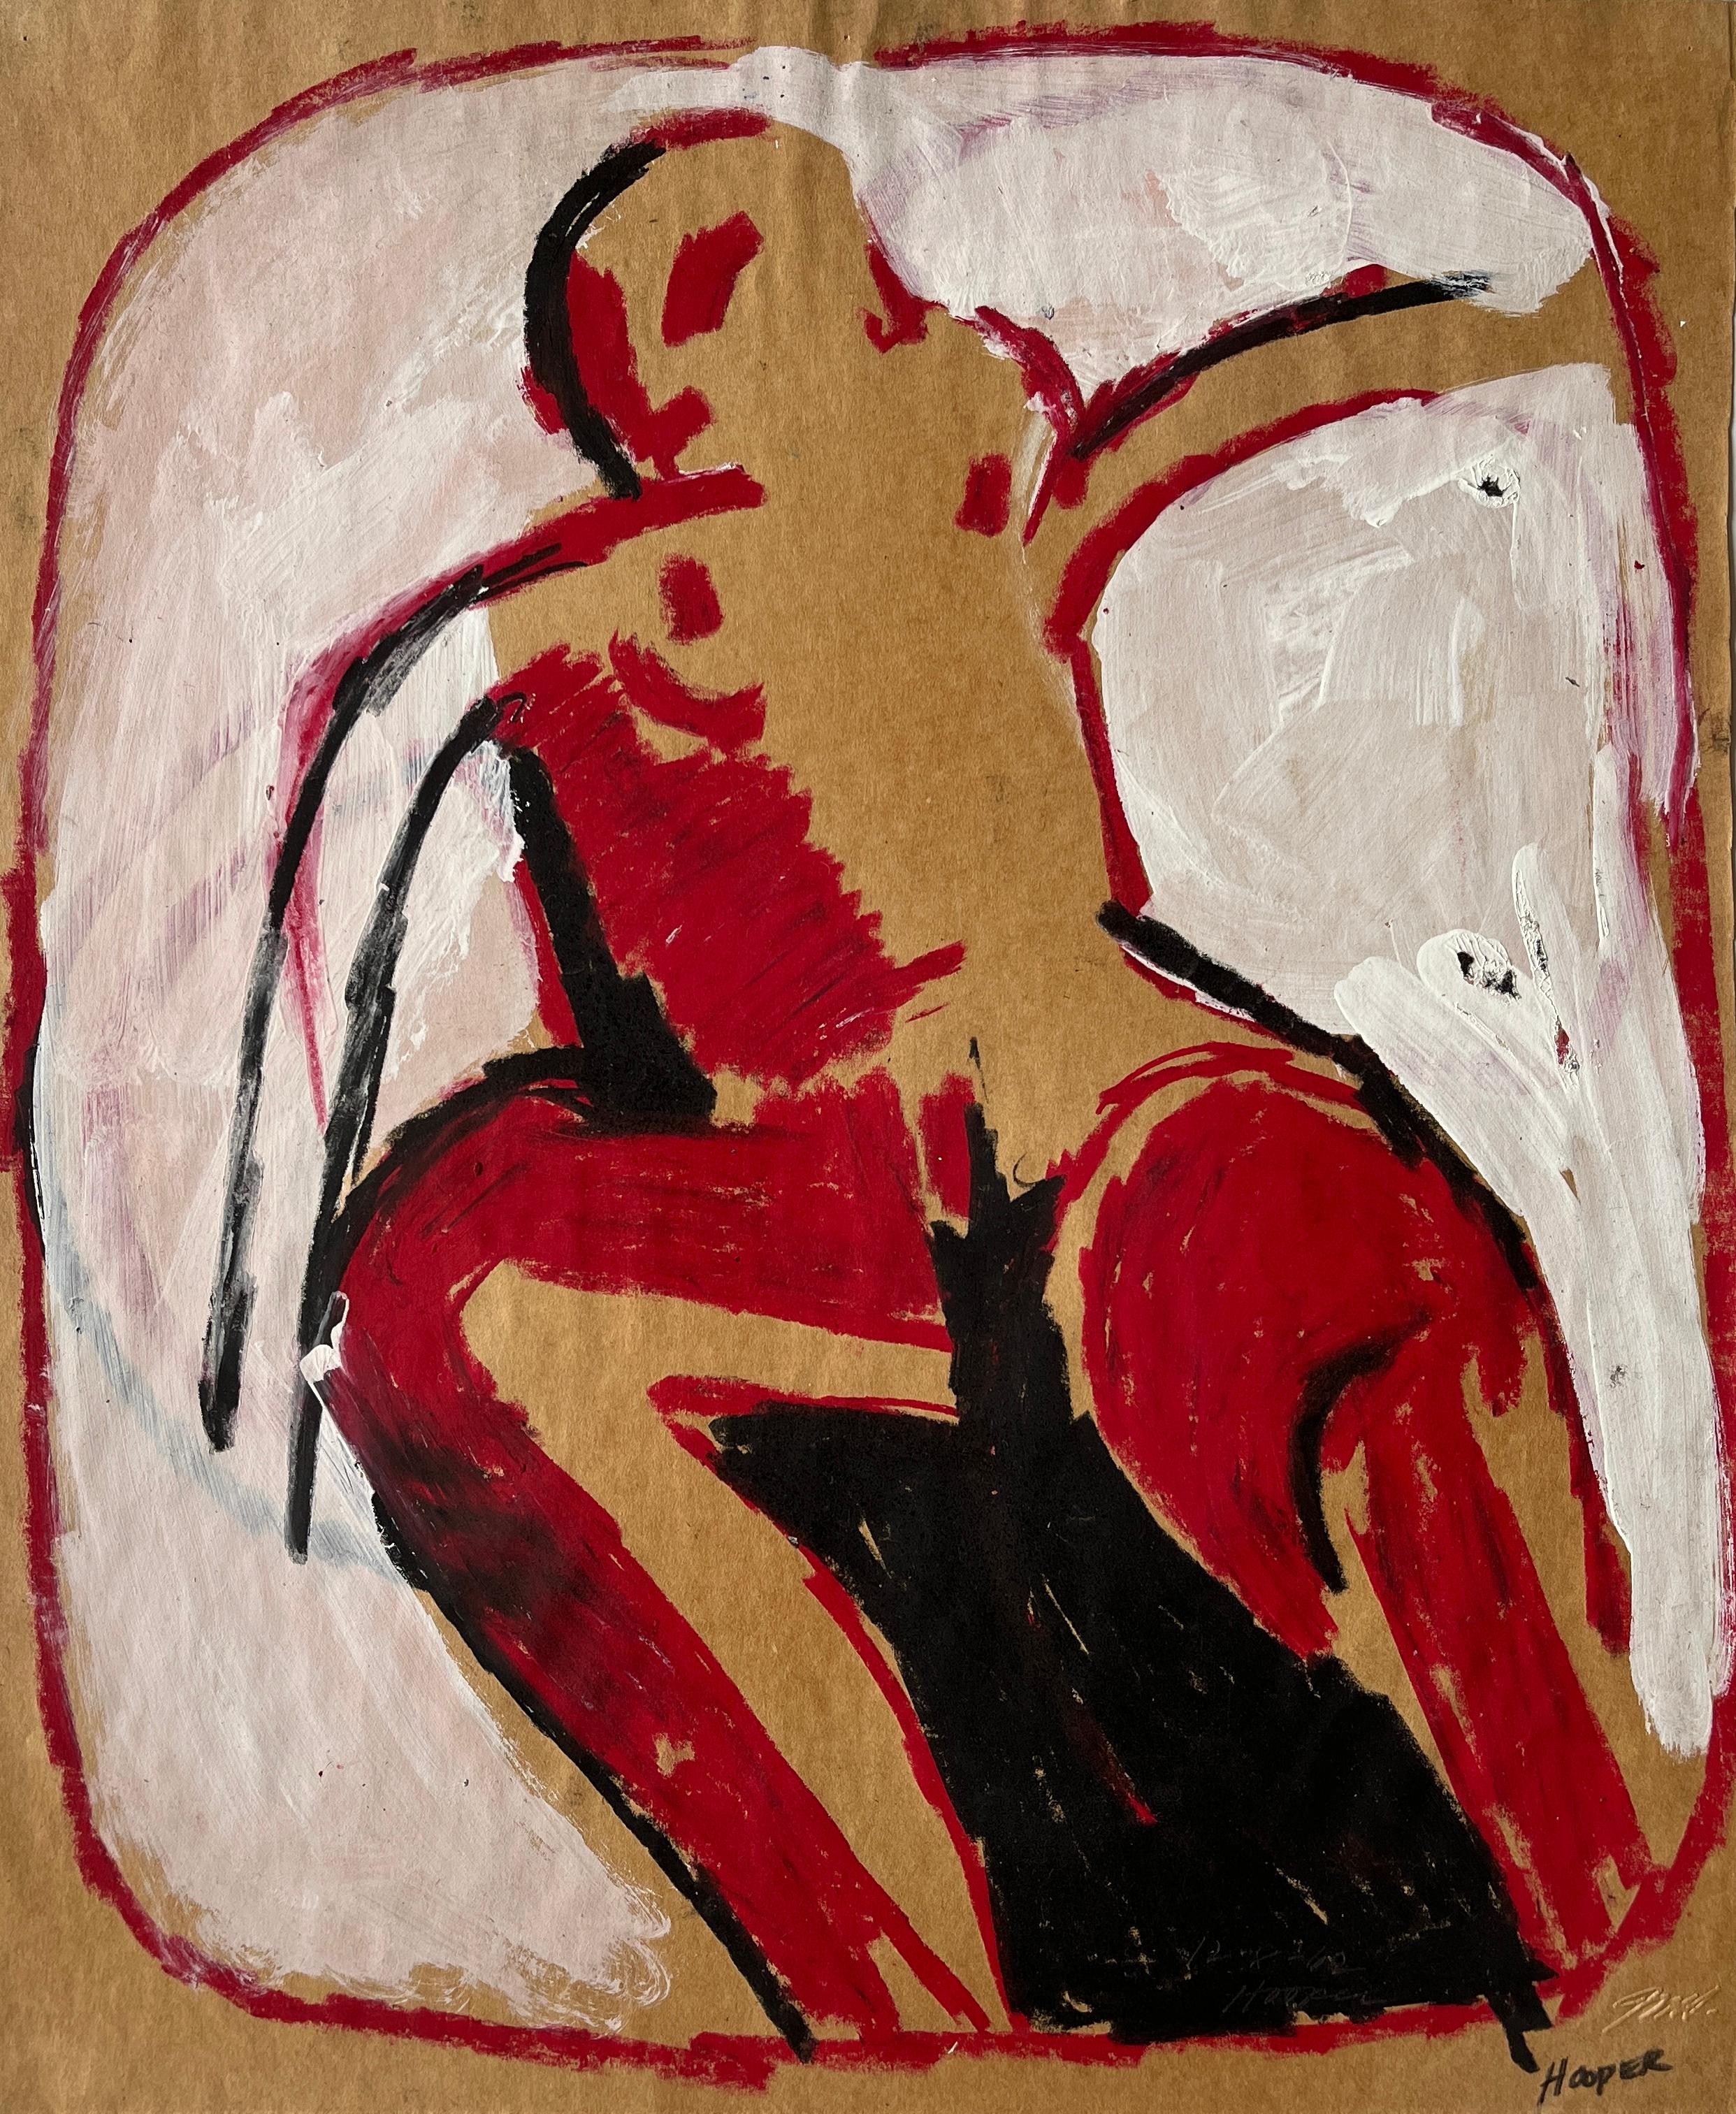 Jack Hooper
"Nackt in der Blase"
c. 1960
Gouache und Pastell auf Papier
15 "x18" ungerahmt
Signiert mit Bleistift unten links

Jack Hoopers abstraktes Kunstwerk, das eine in kräftigem Schwarz umrissene Figur mit dynamischen roten Farbtupfern auf